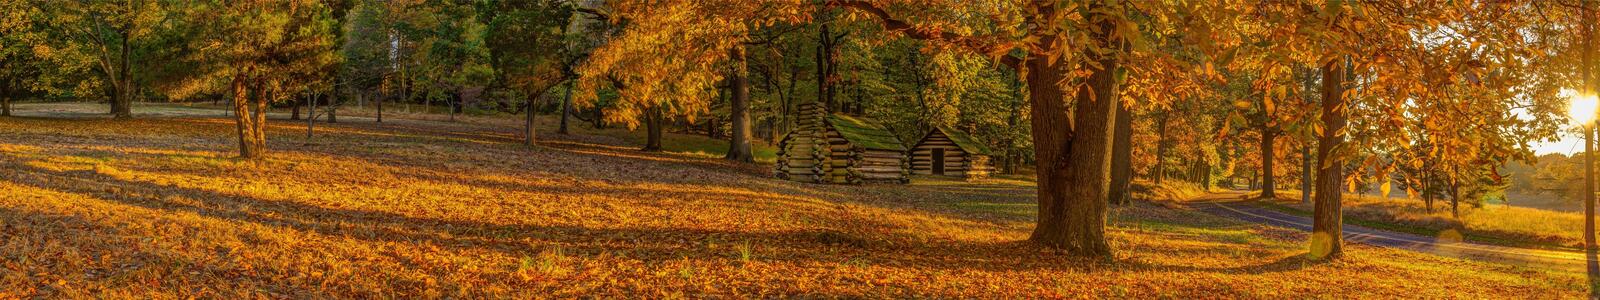 Бесплатное фото Панорама с осенним домиком в лесу